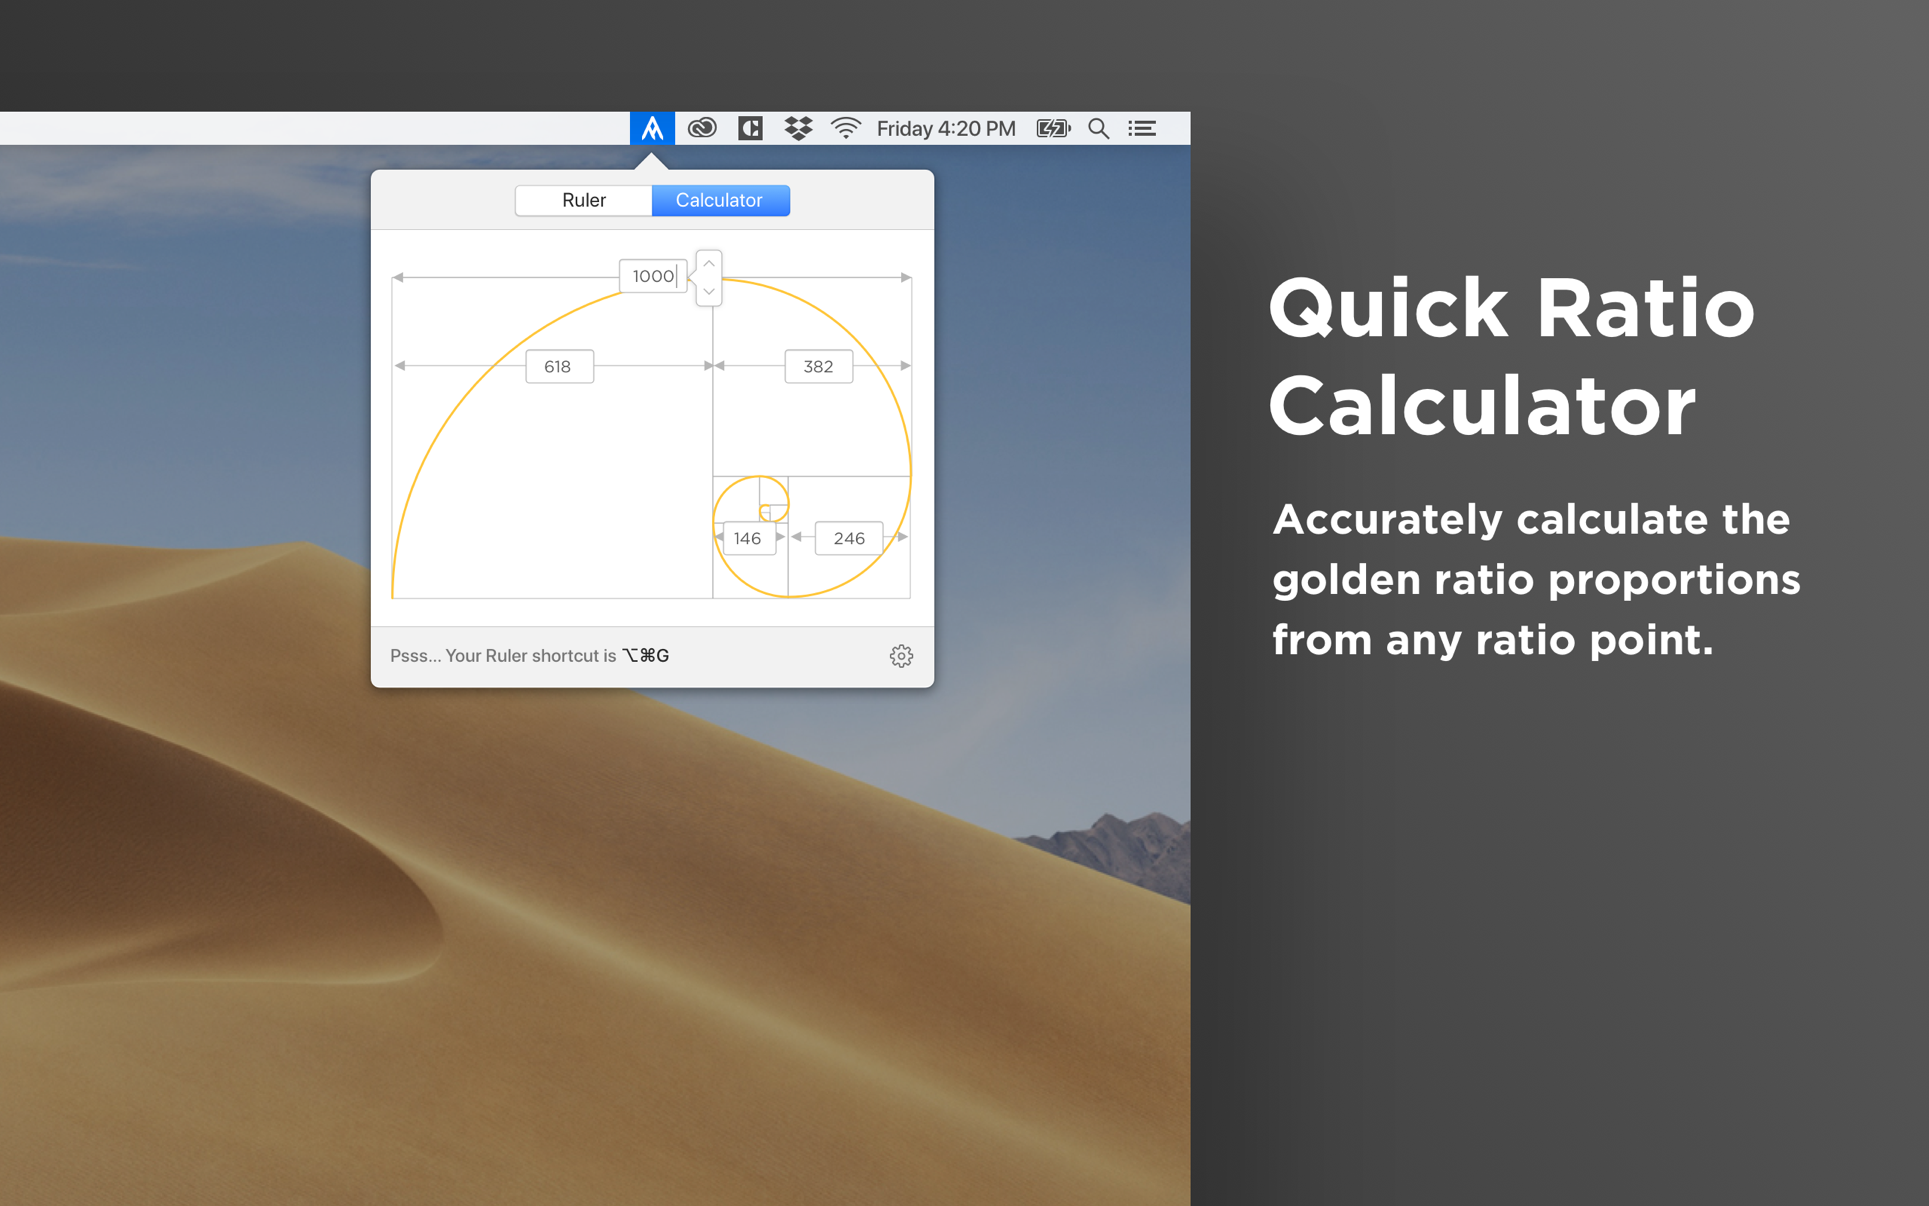 Goldie App 2.1 Mac 破解版 强大的黄金比例设计工具